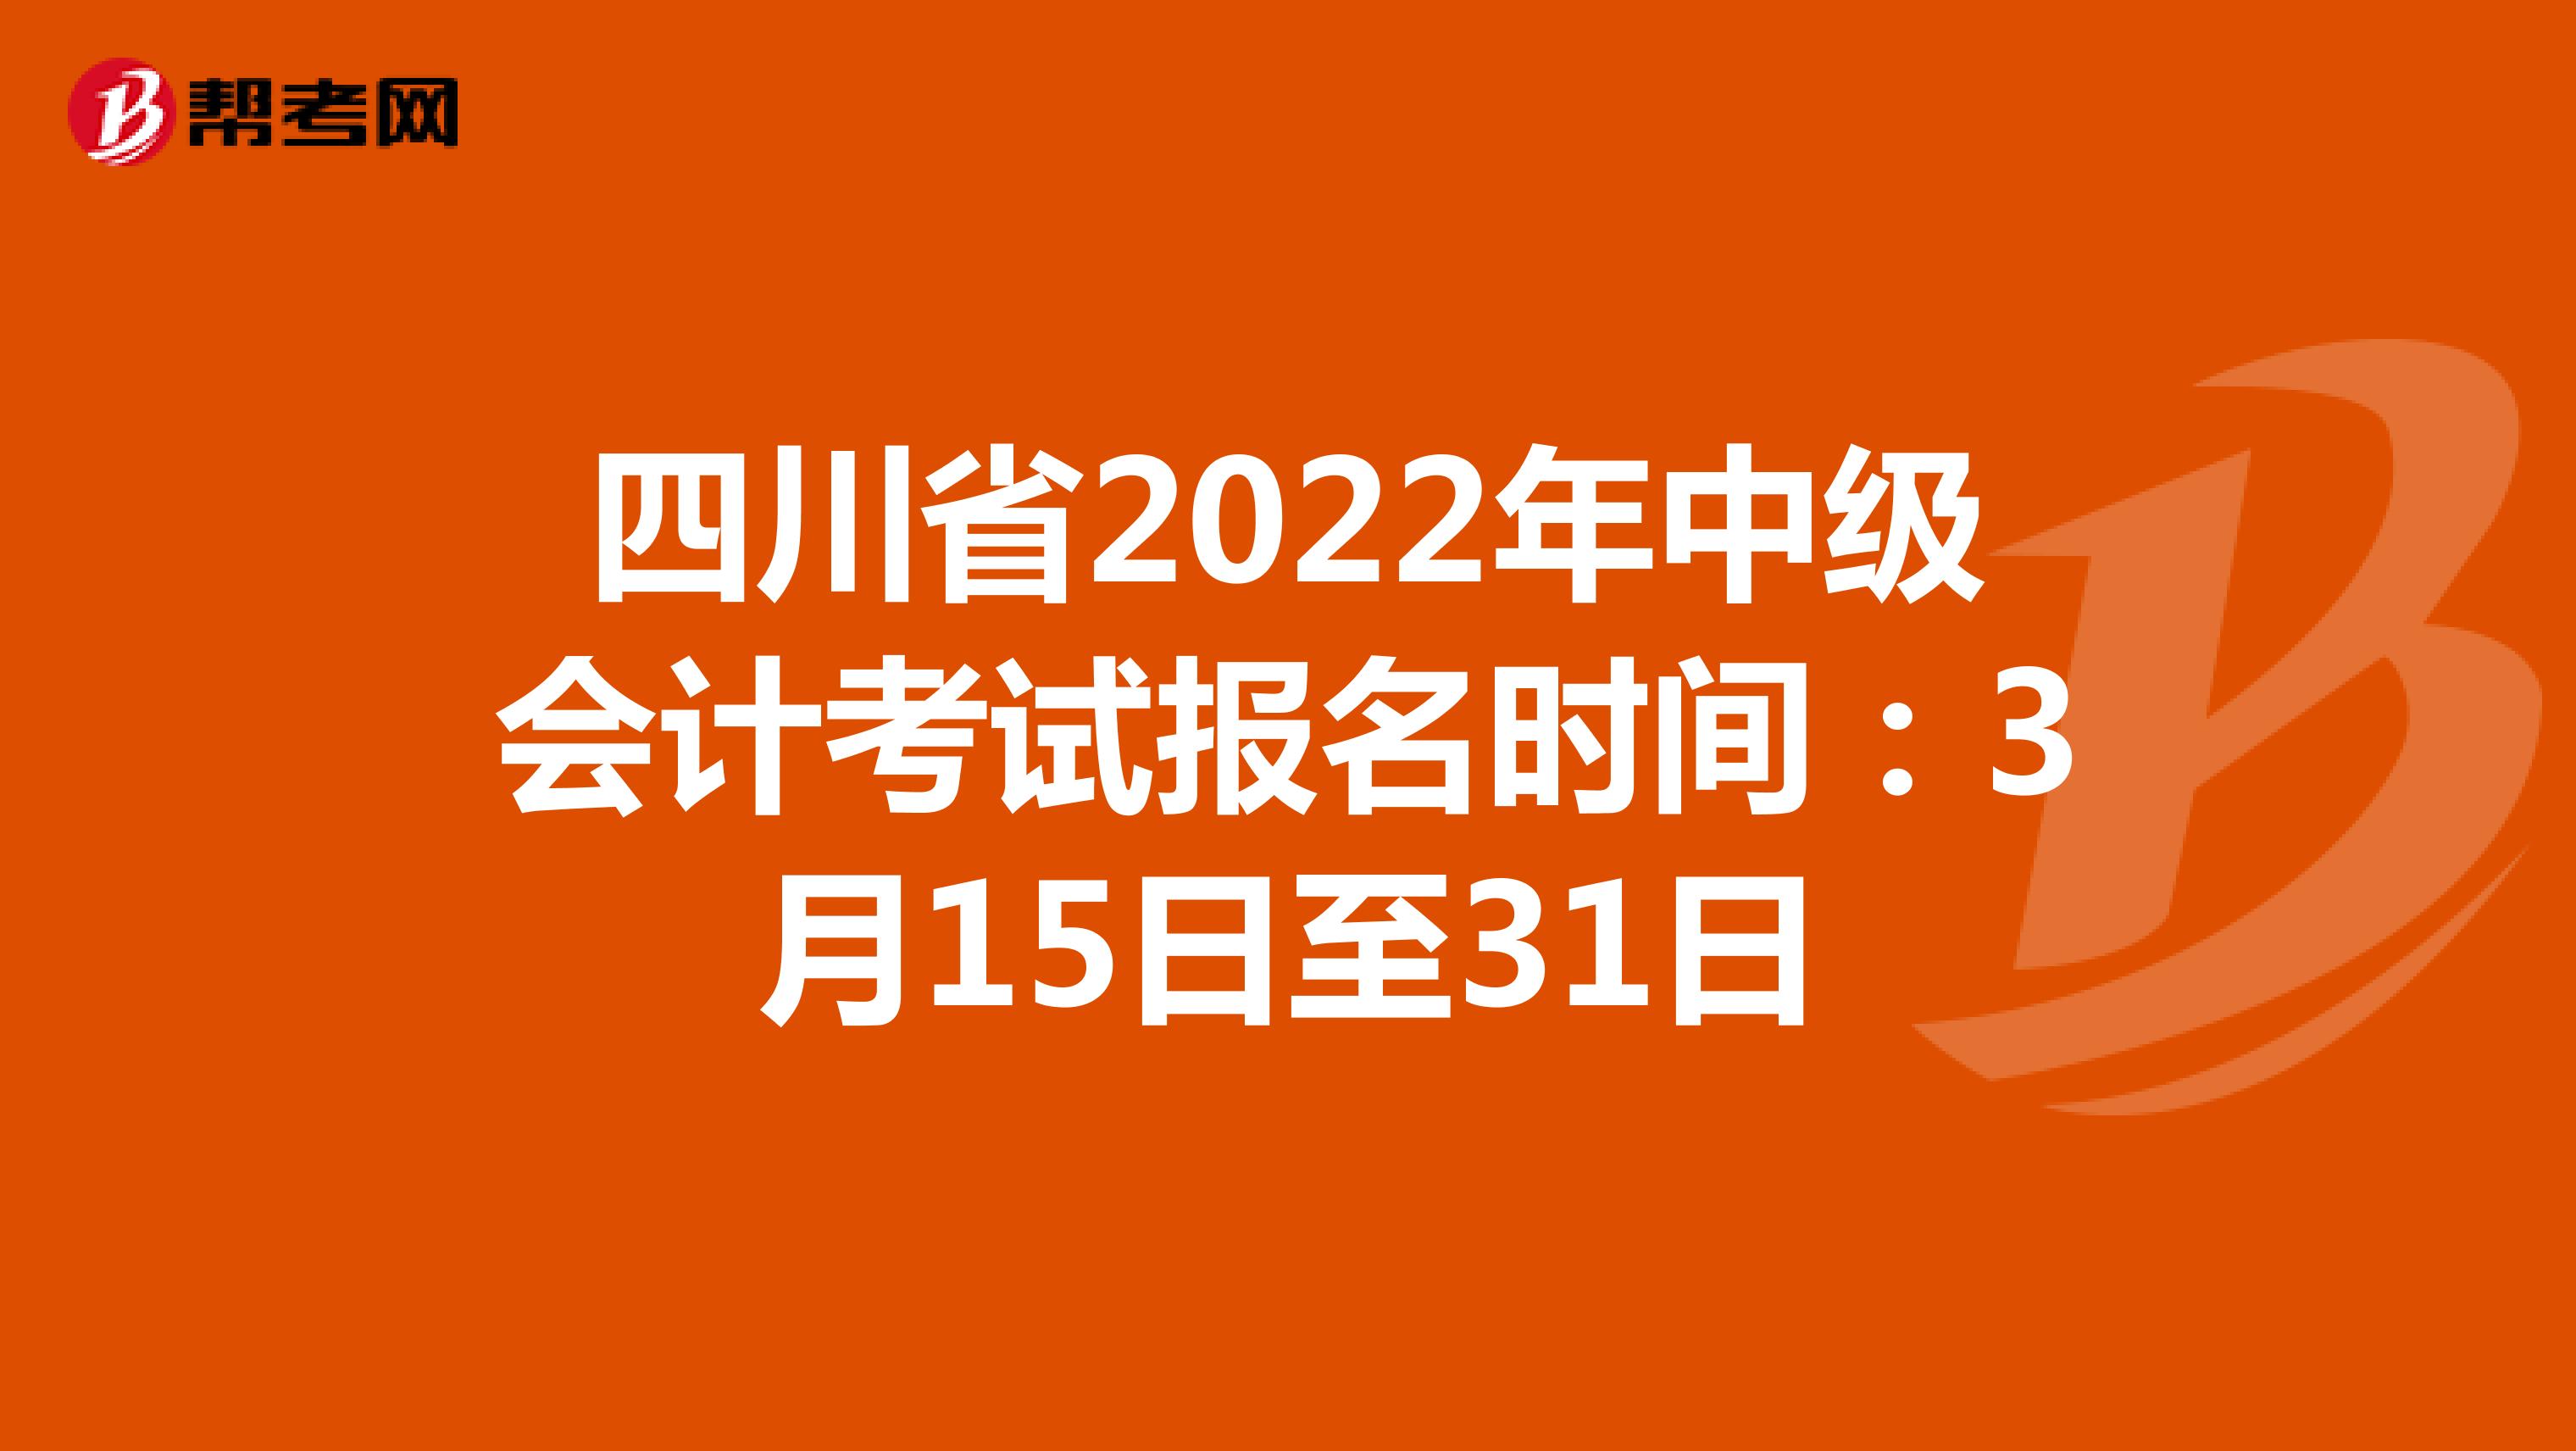 四川省2022年中级会计考试报名时间：3月15日至31日